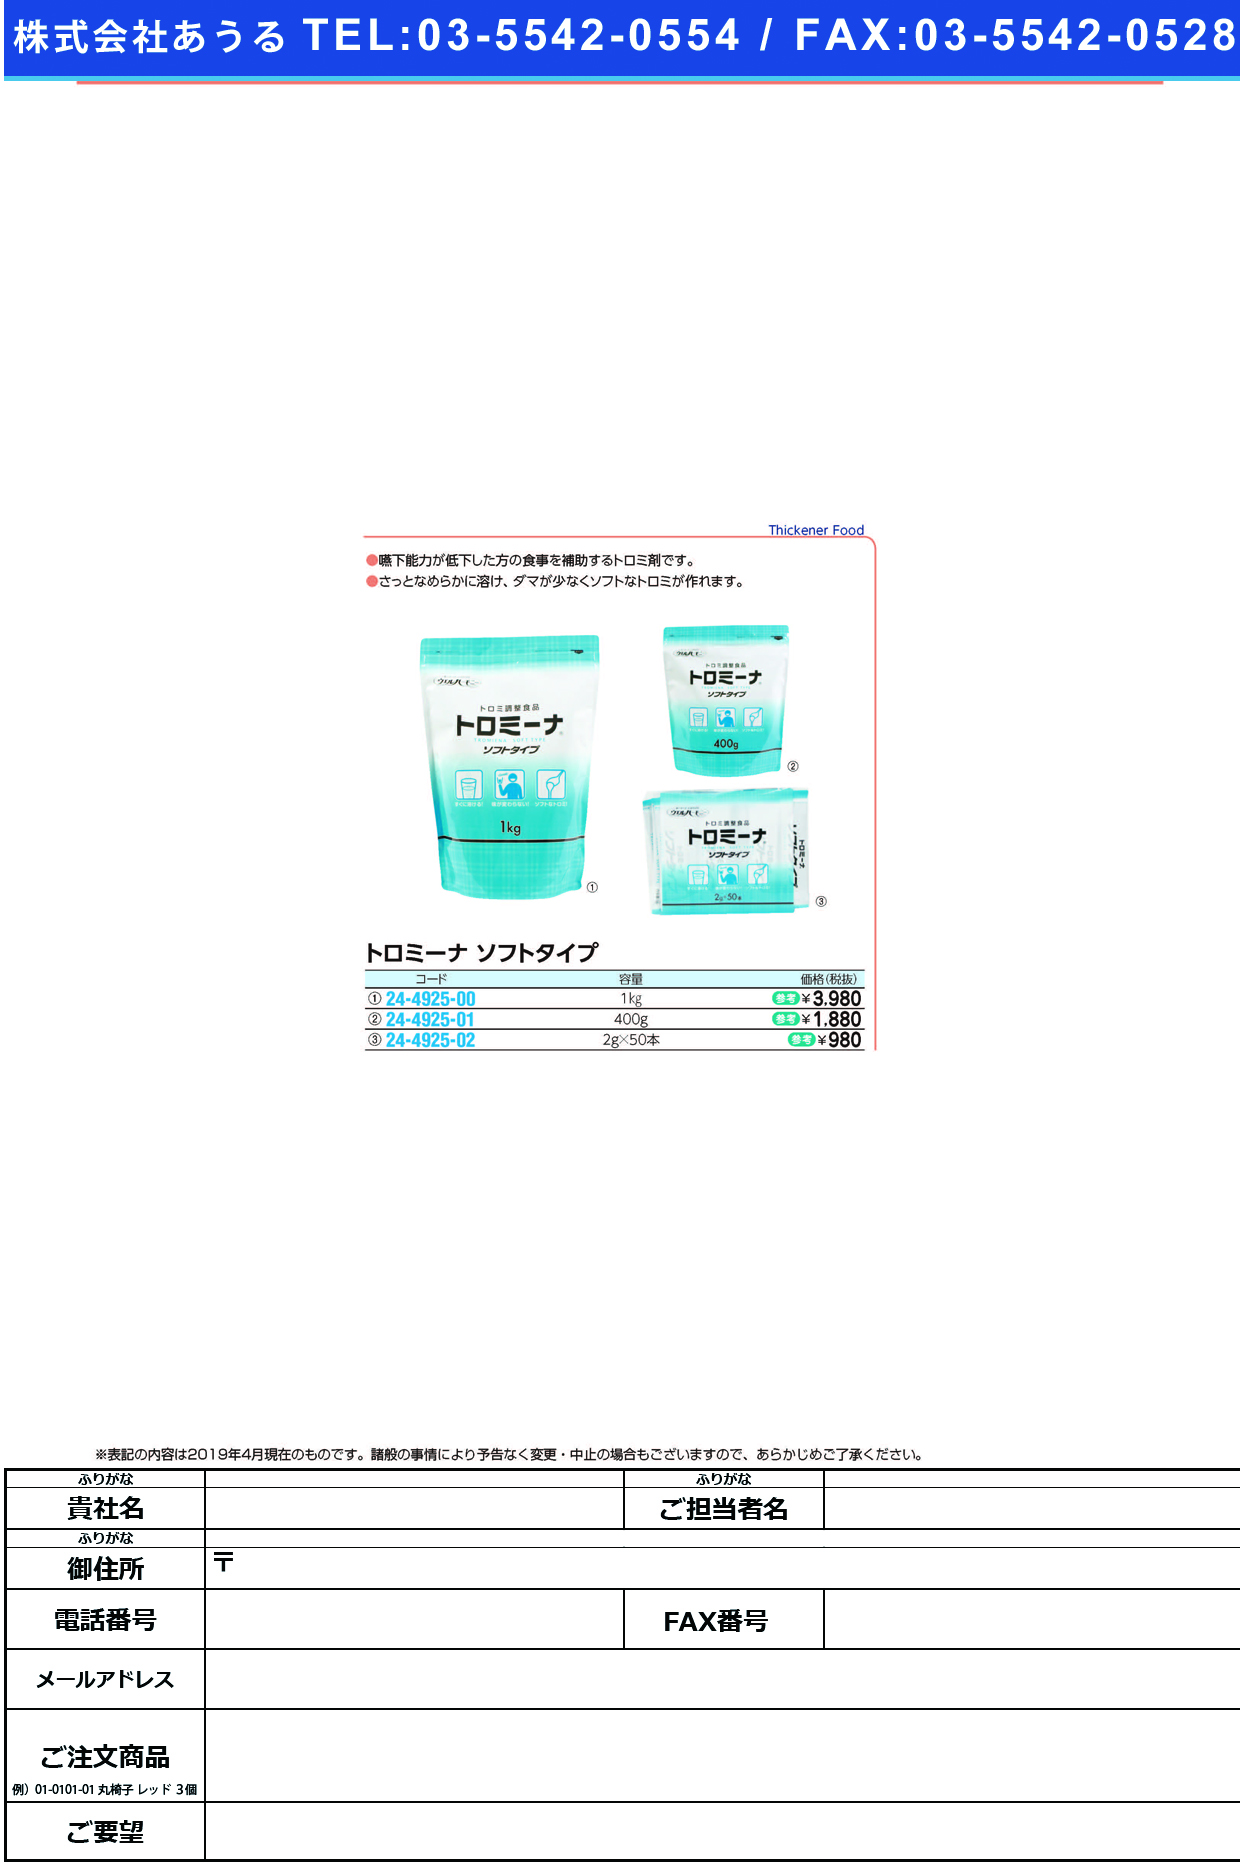 (24-4925-00)トロミーナソフトタイプ 1KG ﾄﾛﾐｰﾅｿﾌﾄﾀｲﾌﾟ【1袋単位】【2019年カタログ商品】